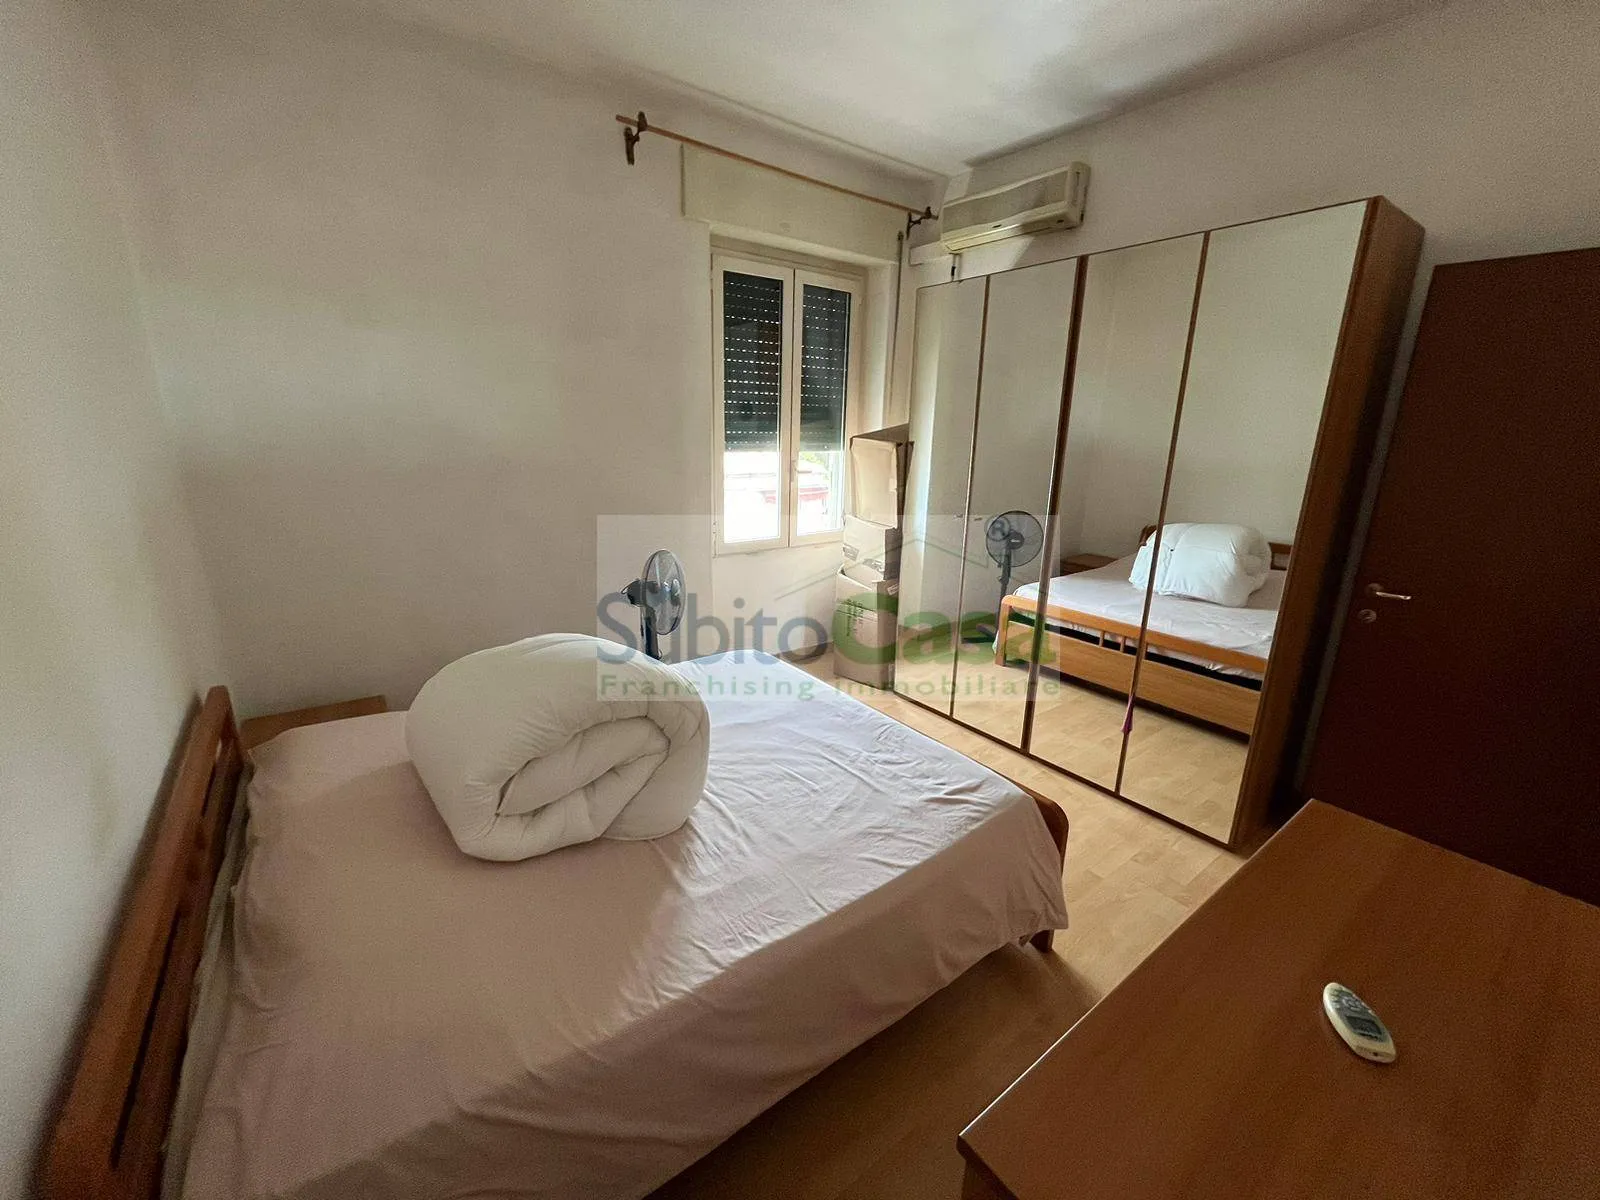 Immagine per Appartamento in affitto a Chieti Via Fratelli Palizzi